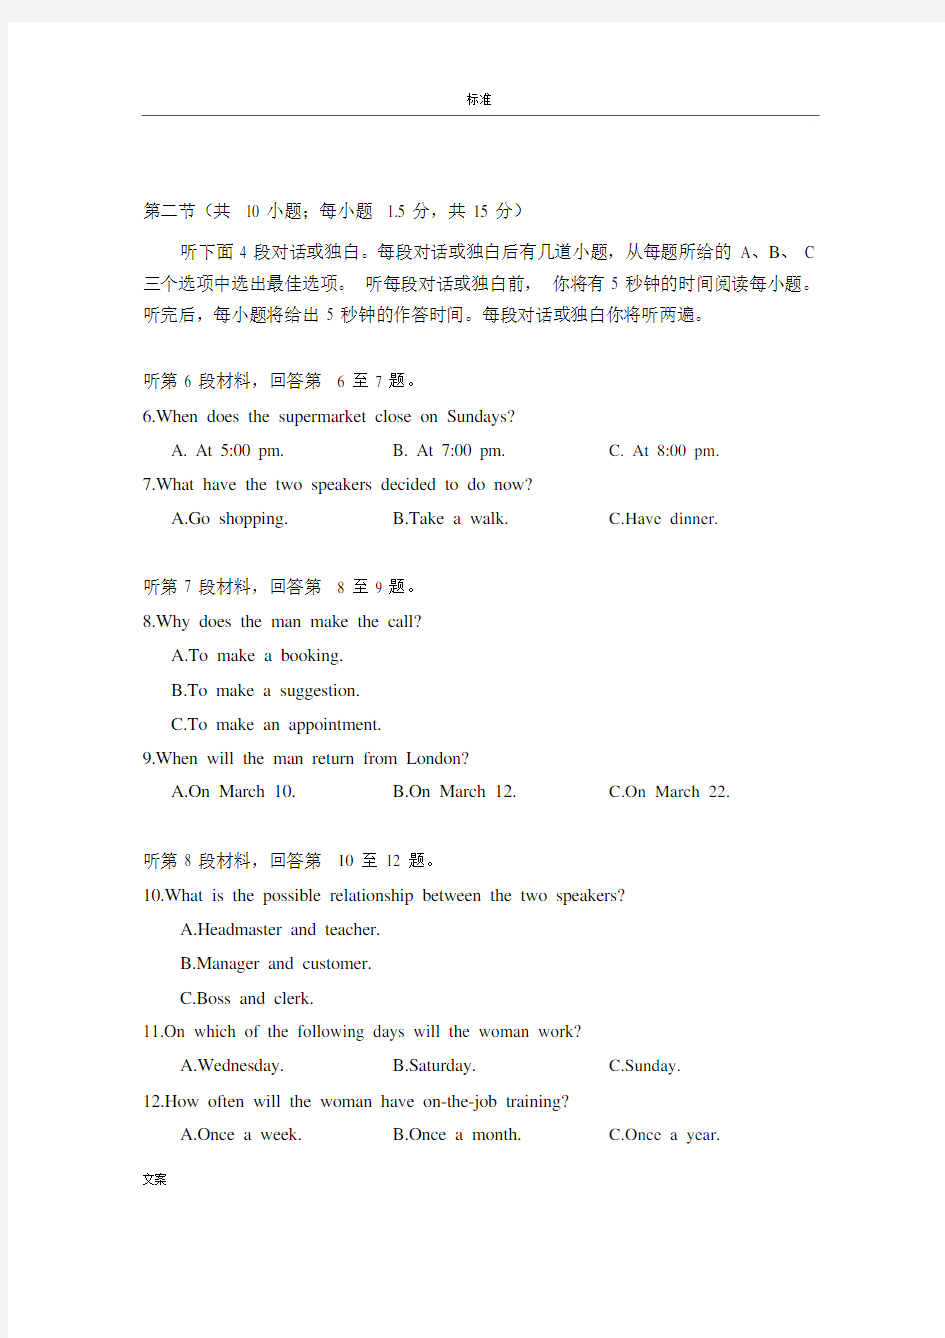 2016年高考北京英语真题